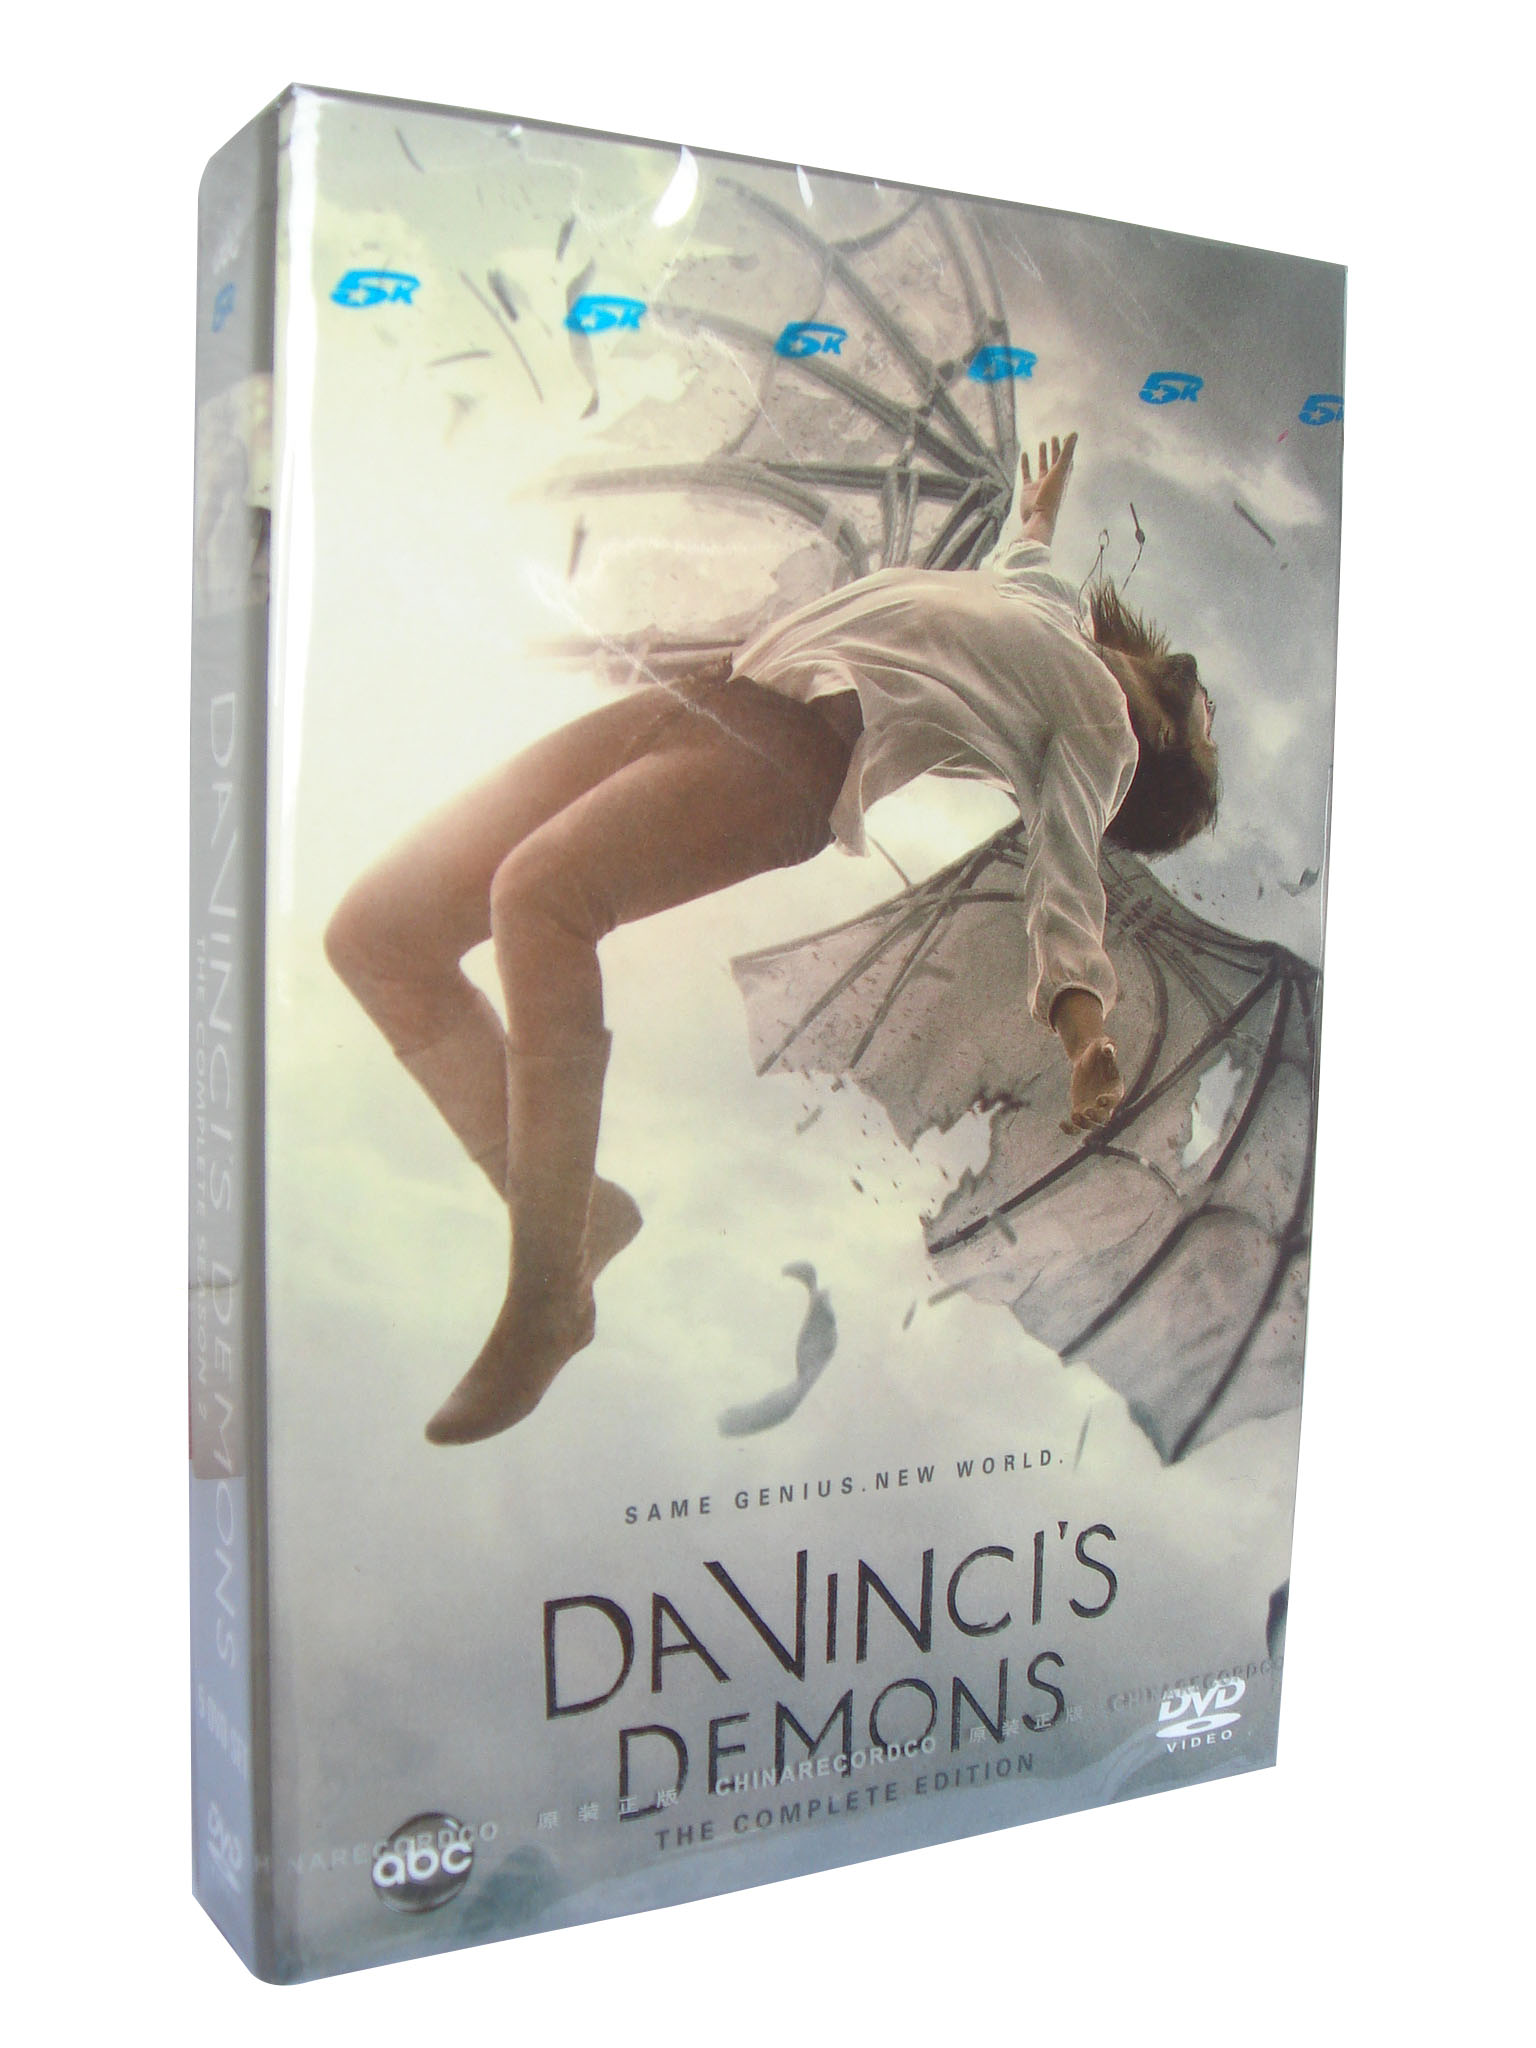 Davinci's Demons Season 2 DVD Boxset